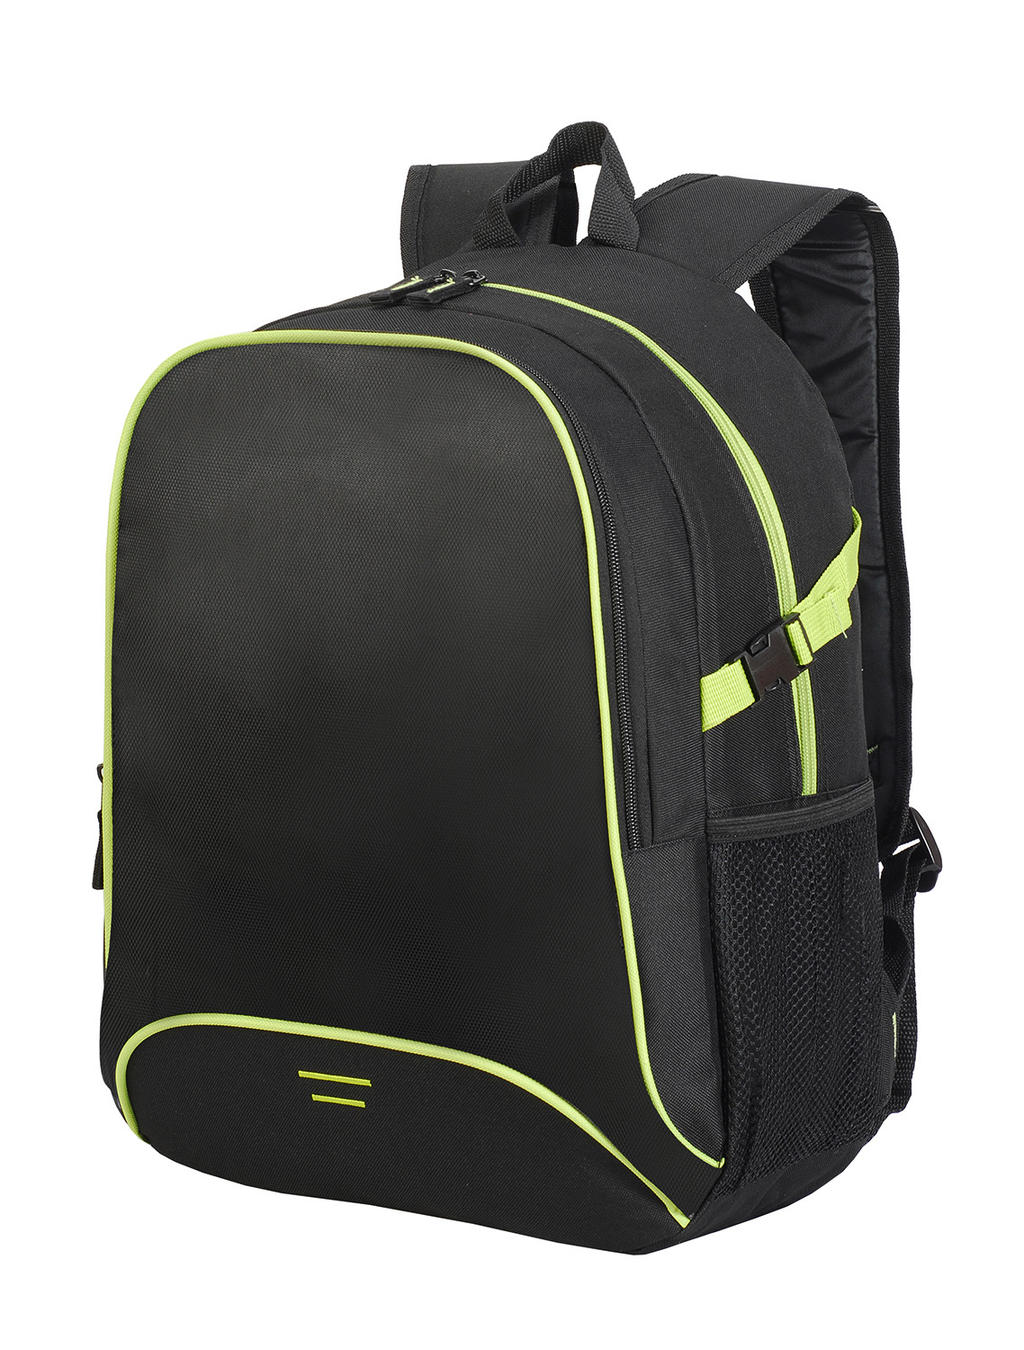  Osaka Basic Backpack in Farbe Black/Lime Green